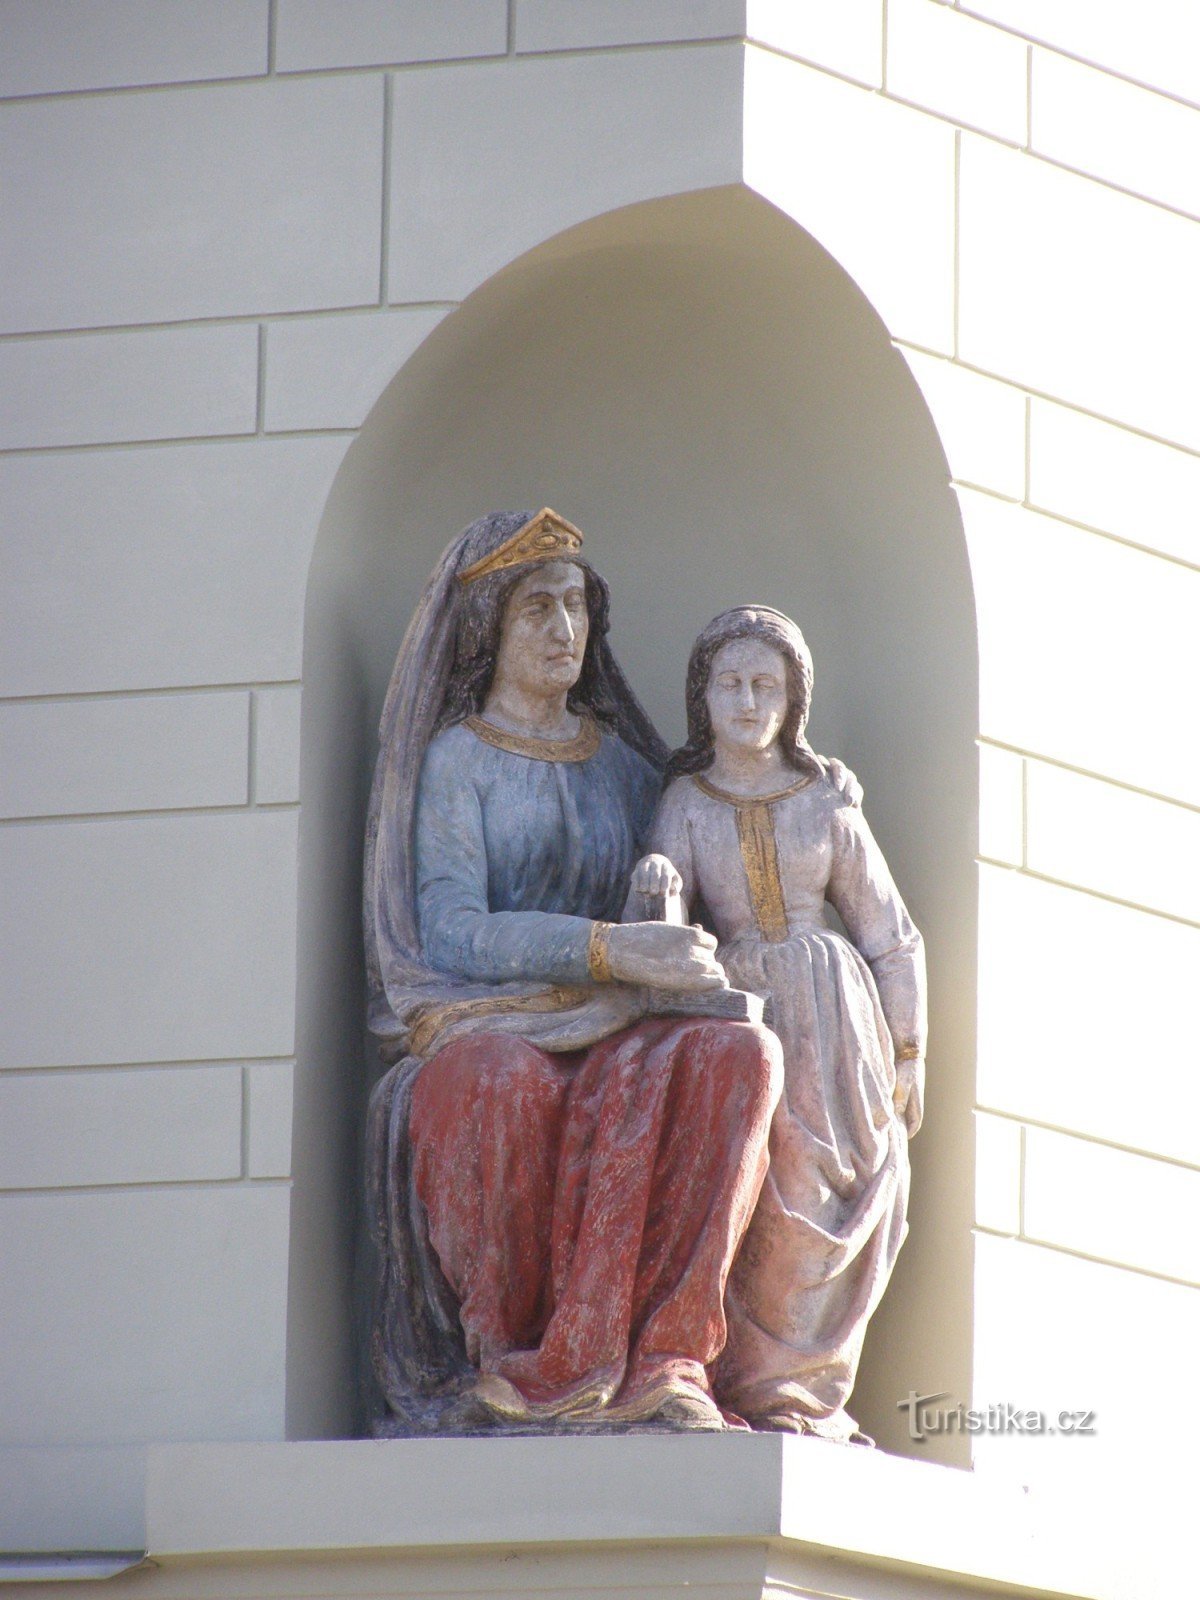 Týnec nad Labem - burgerhuis nr. 158 met het standbeeld van St. Anne onderwijst de Maagd Maria